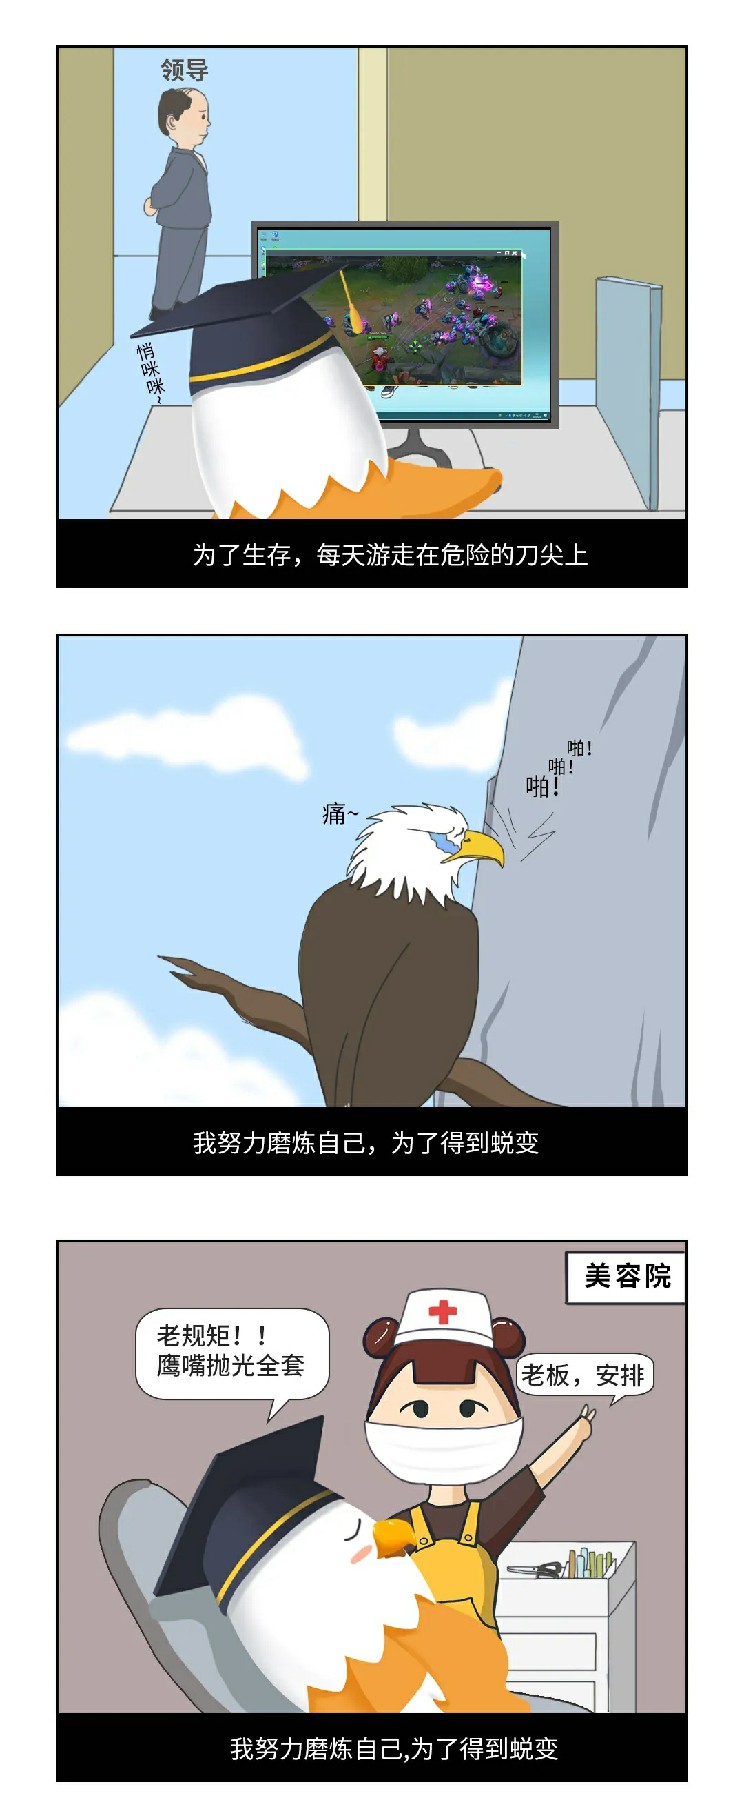 鹰的故事3.webp~1.jpg